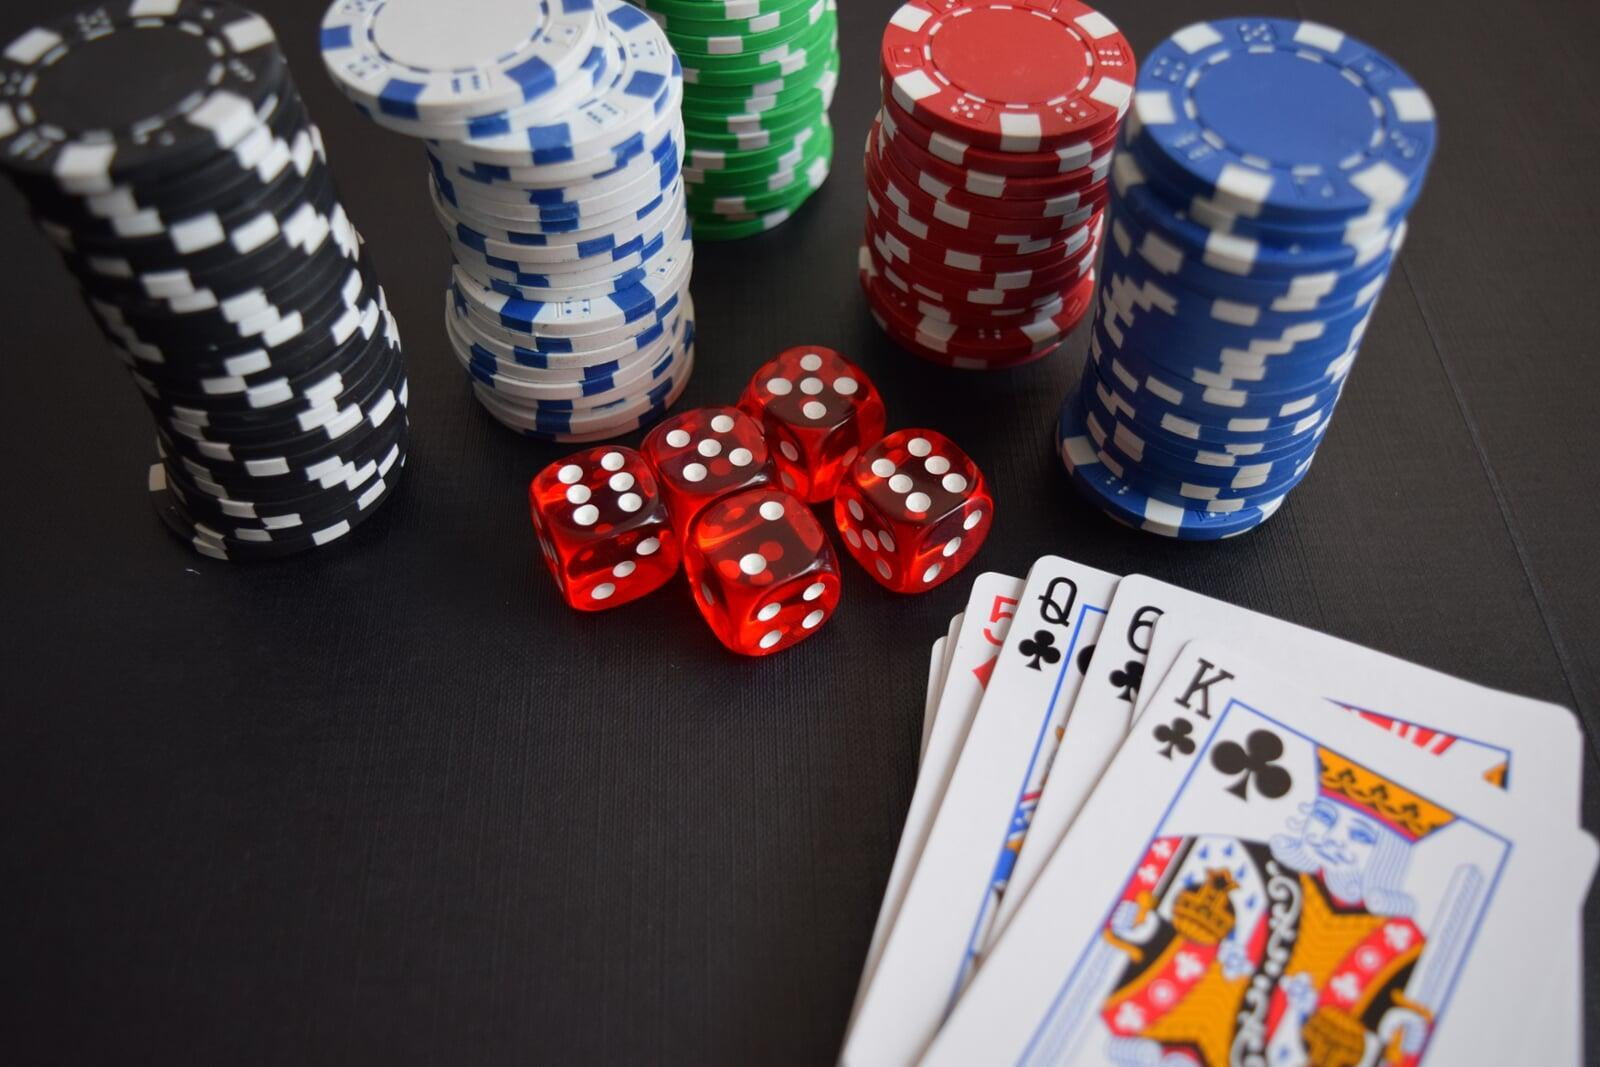 Protecting vulnerable gamblers